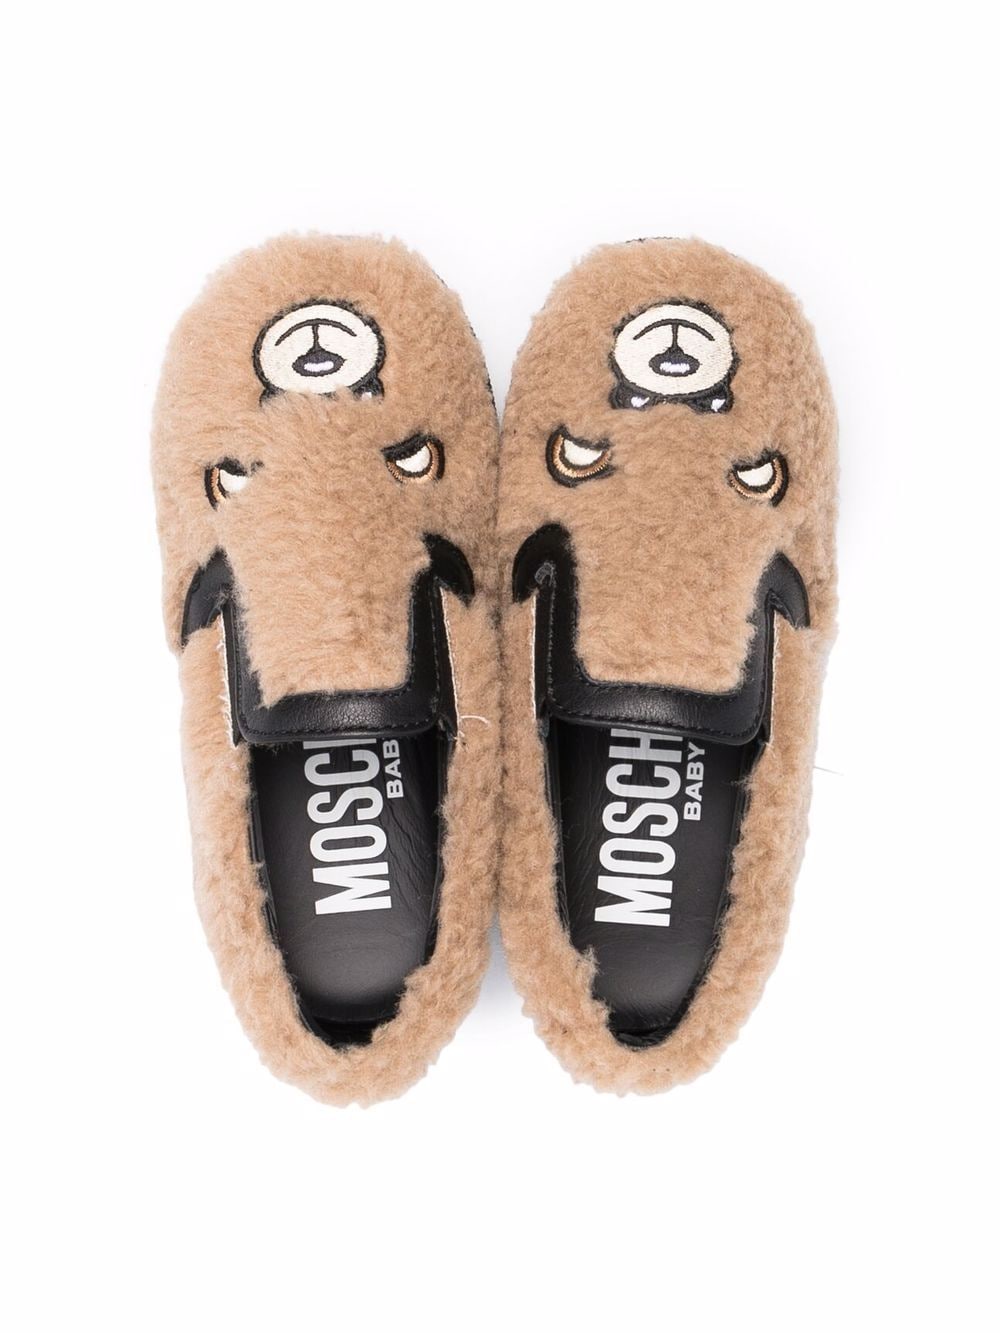 Beige slippers for children